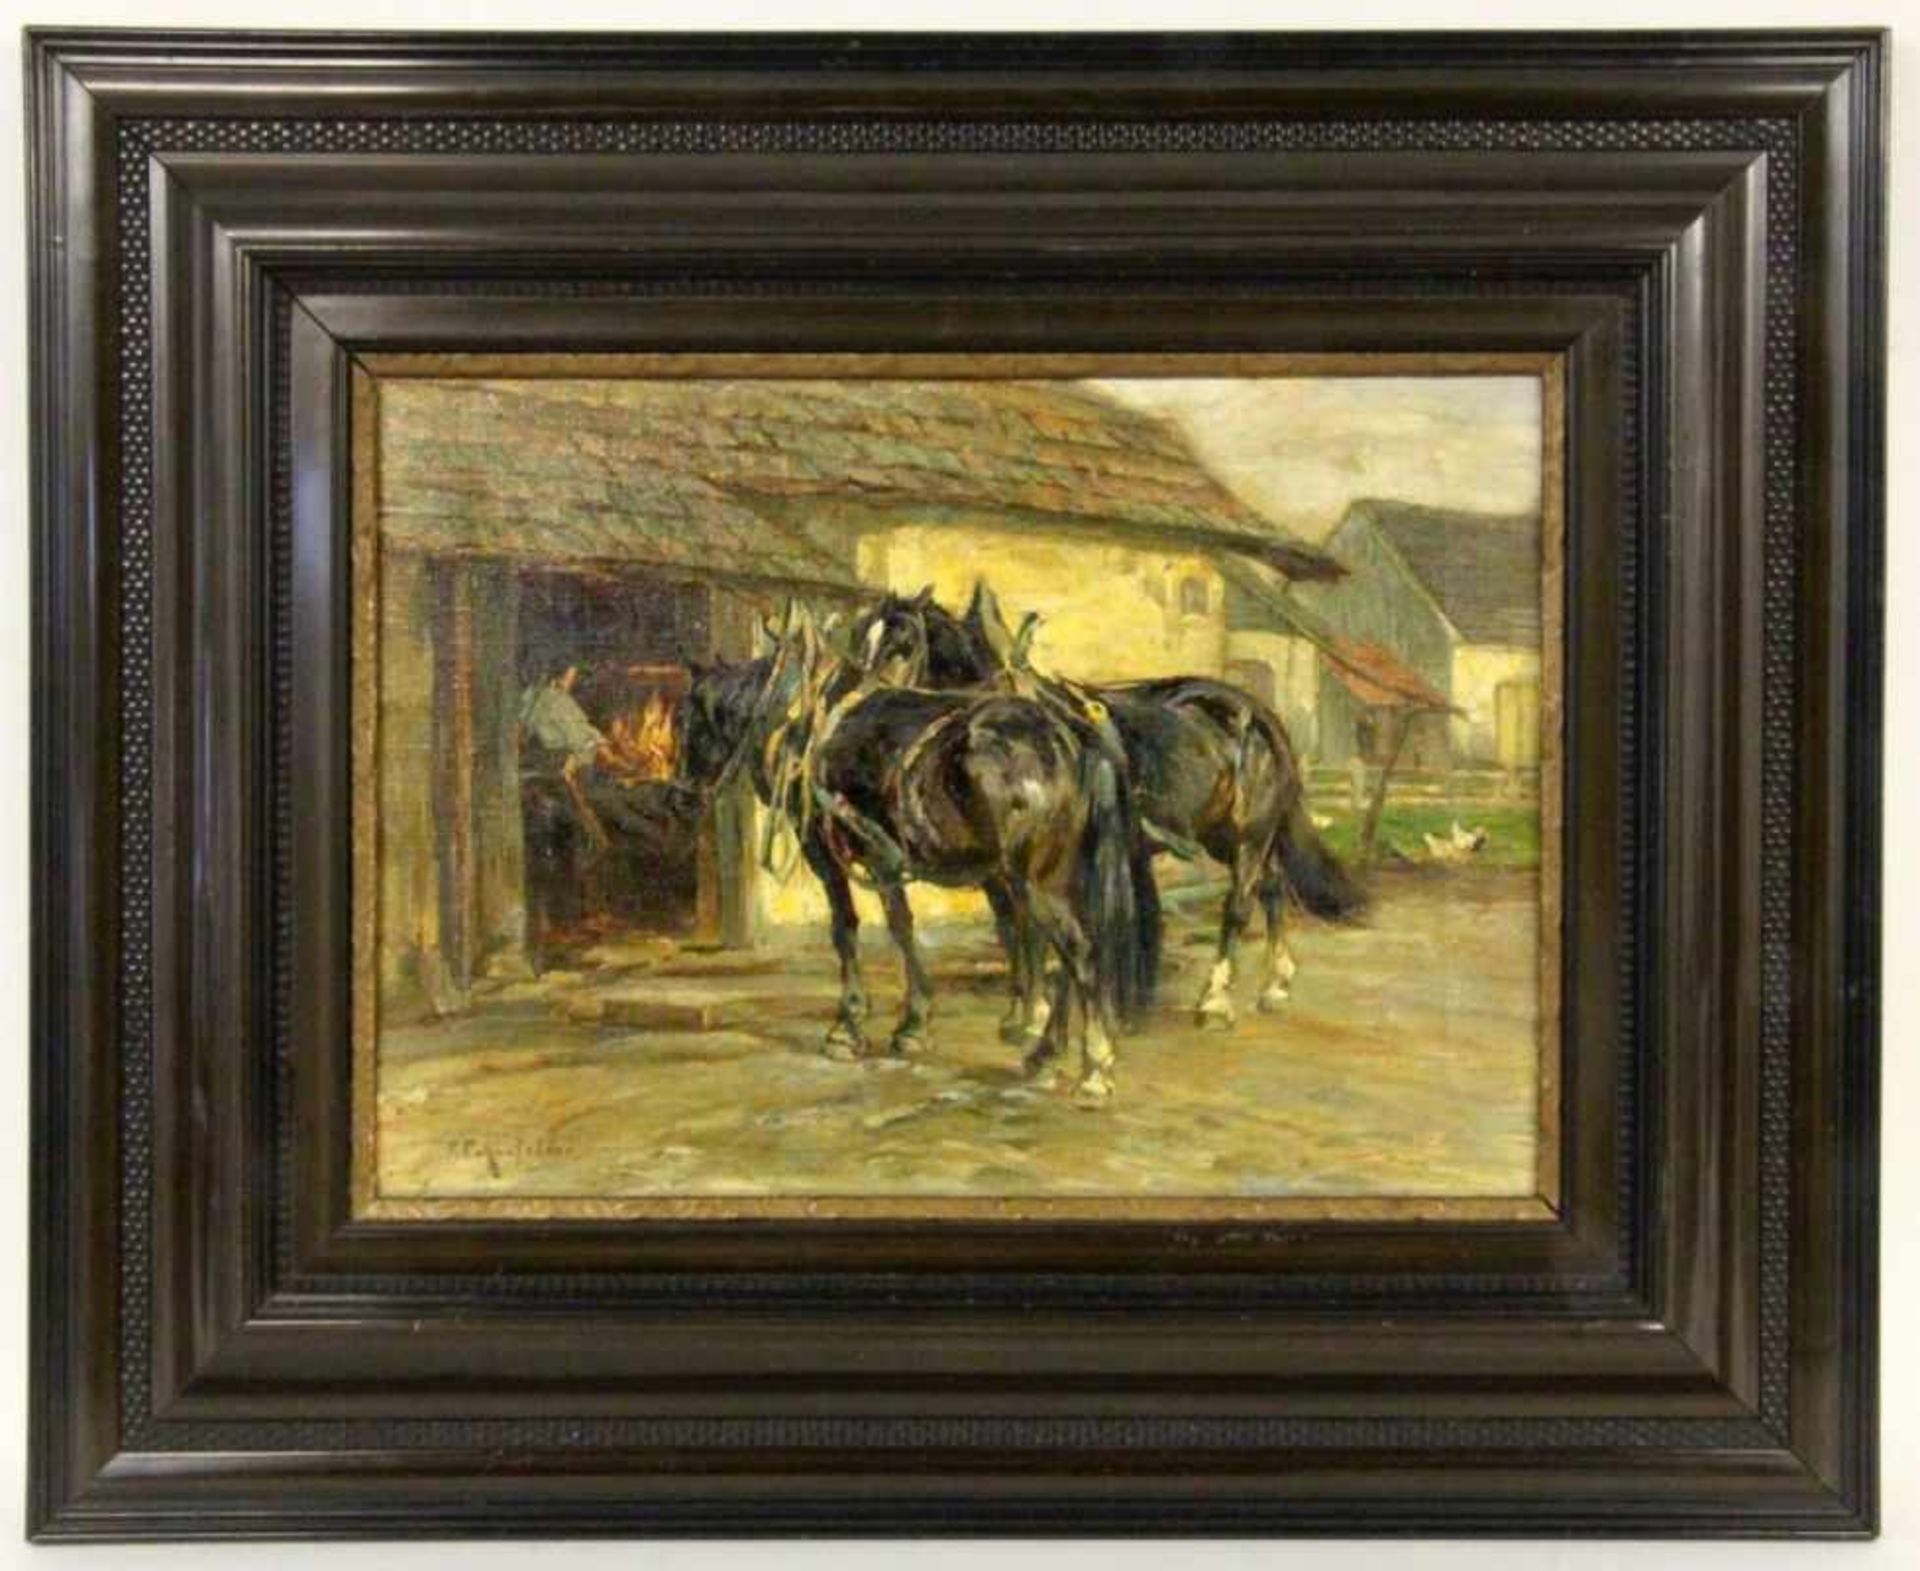 ECKENFELDER, FRIEDRICHBern 1861 - 1938 Balingen Zwei Pferde vor der Schmiede. Öl/Lwd., signiert.